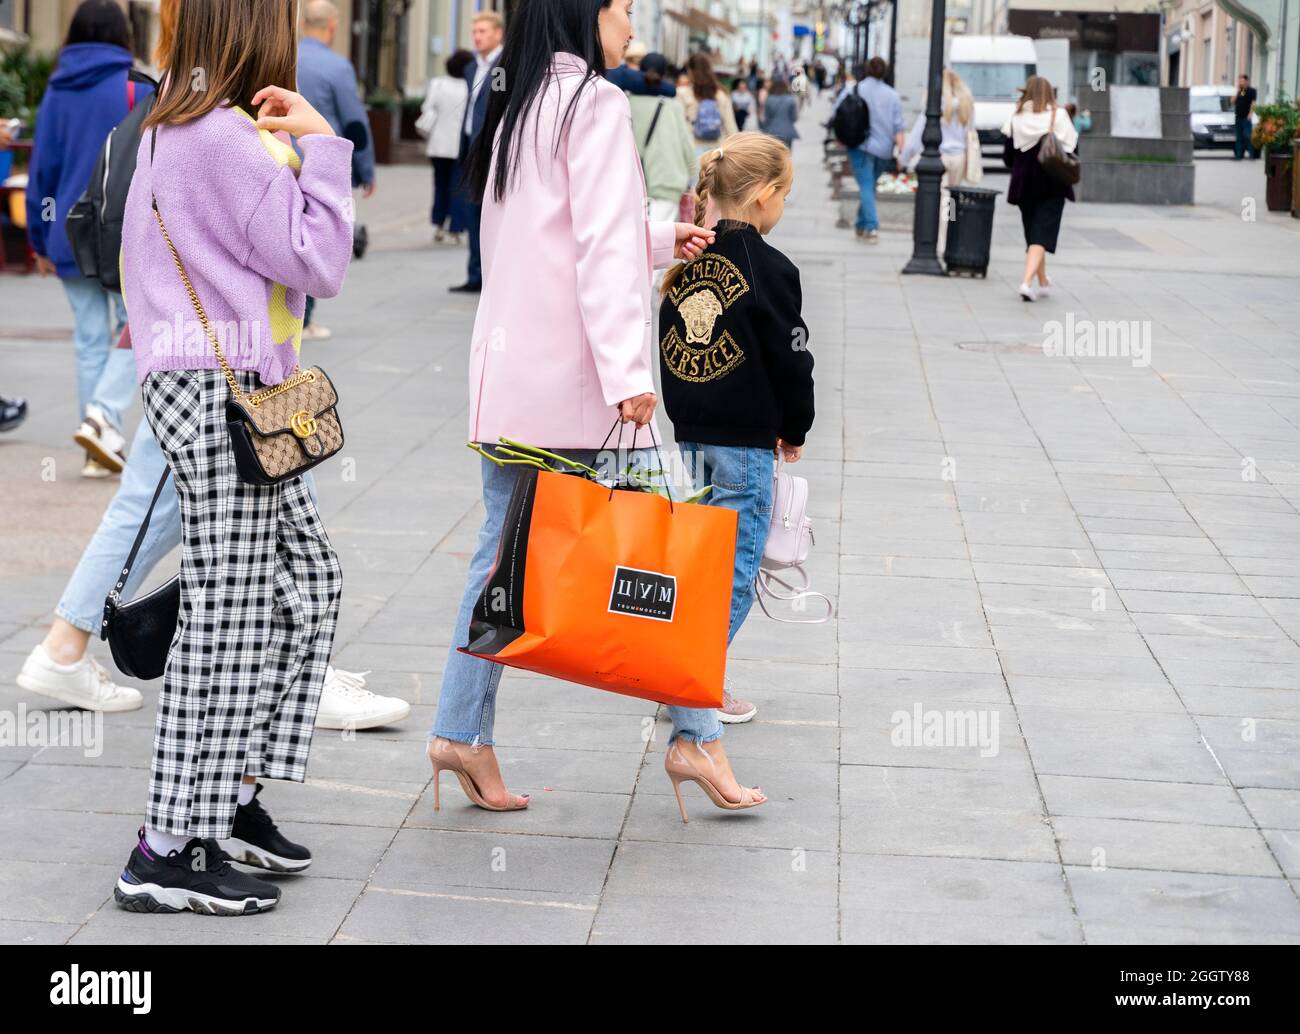 Une femme portant un sac de shopping TSUM grand magasin marchant avec la famille habillée avec élégance dans des tenues de marque, Moscou, Russie.Concept-consumérisme. Banque D'Images